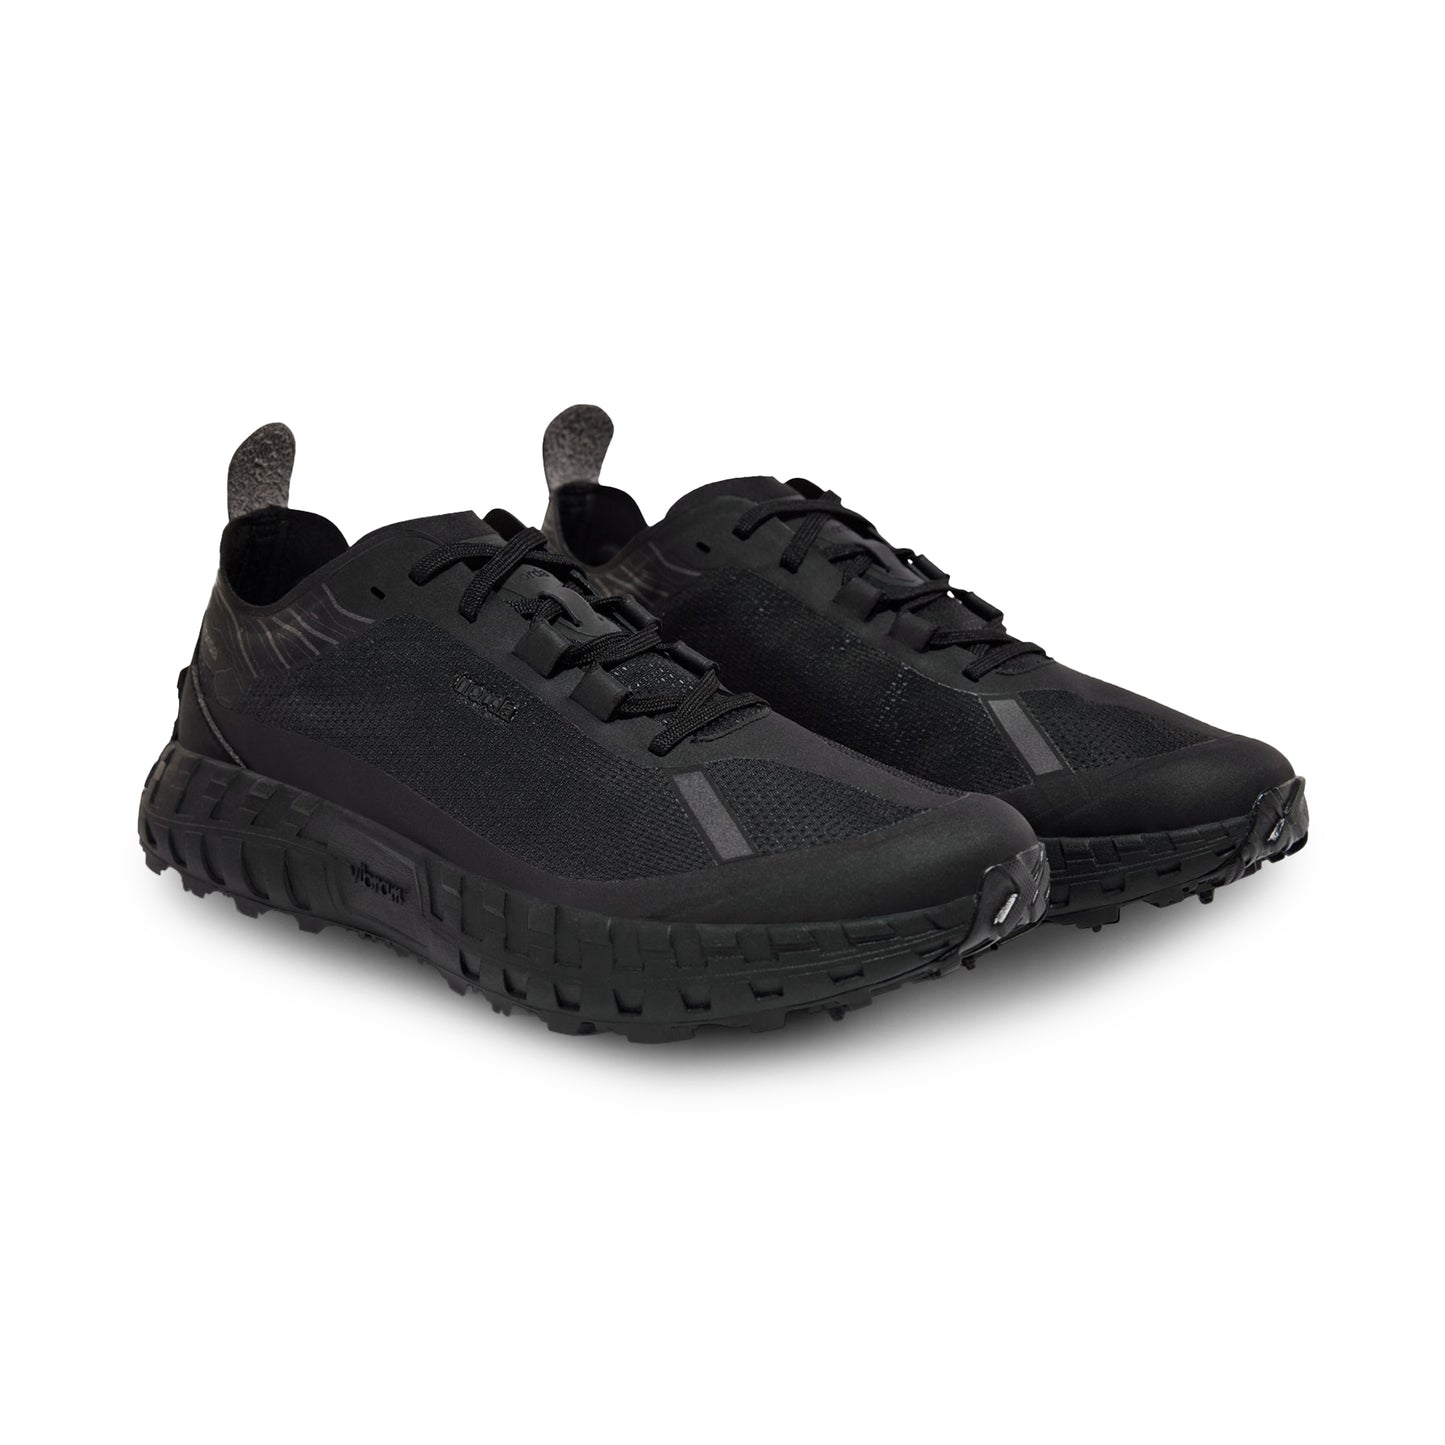 Norda 001 Stealth Black Dyneema Trail Shoes